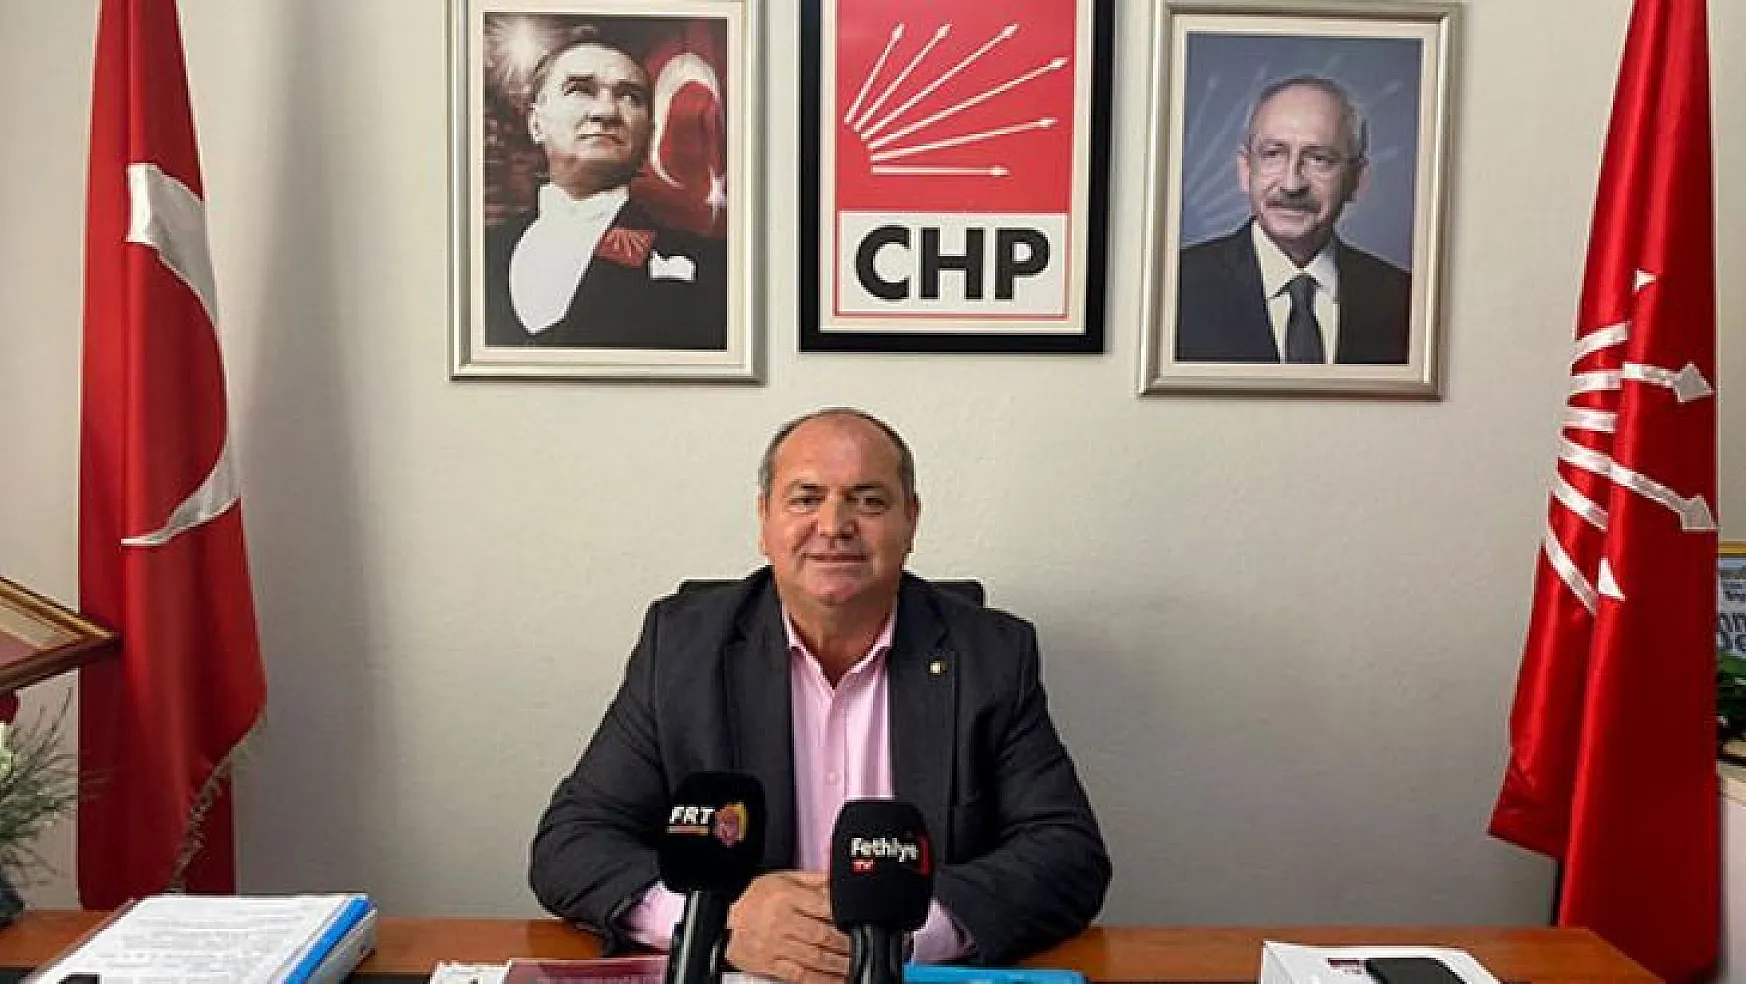 CHP Fethiye İlçe Başkanı Mehmet Demir: 'Öztürk, Uyansın da halkın arasına girsin'